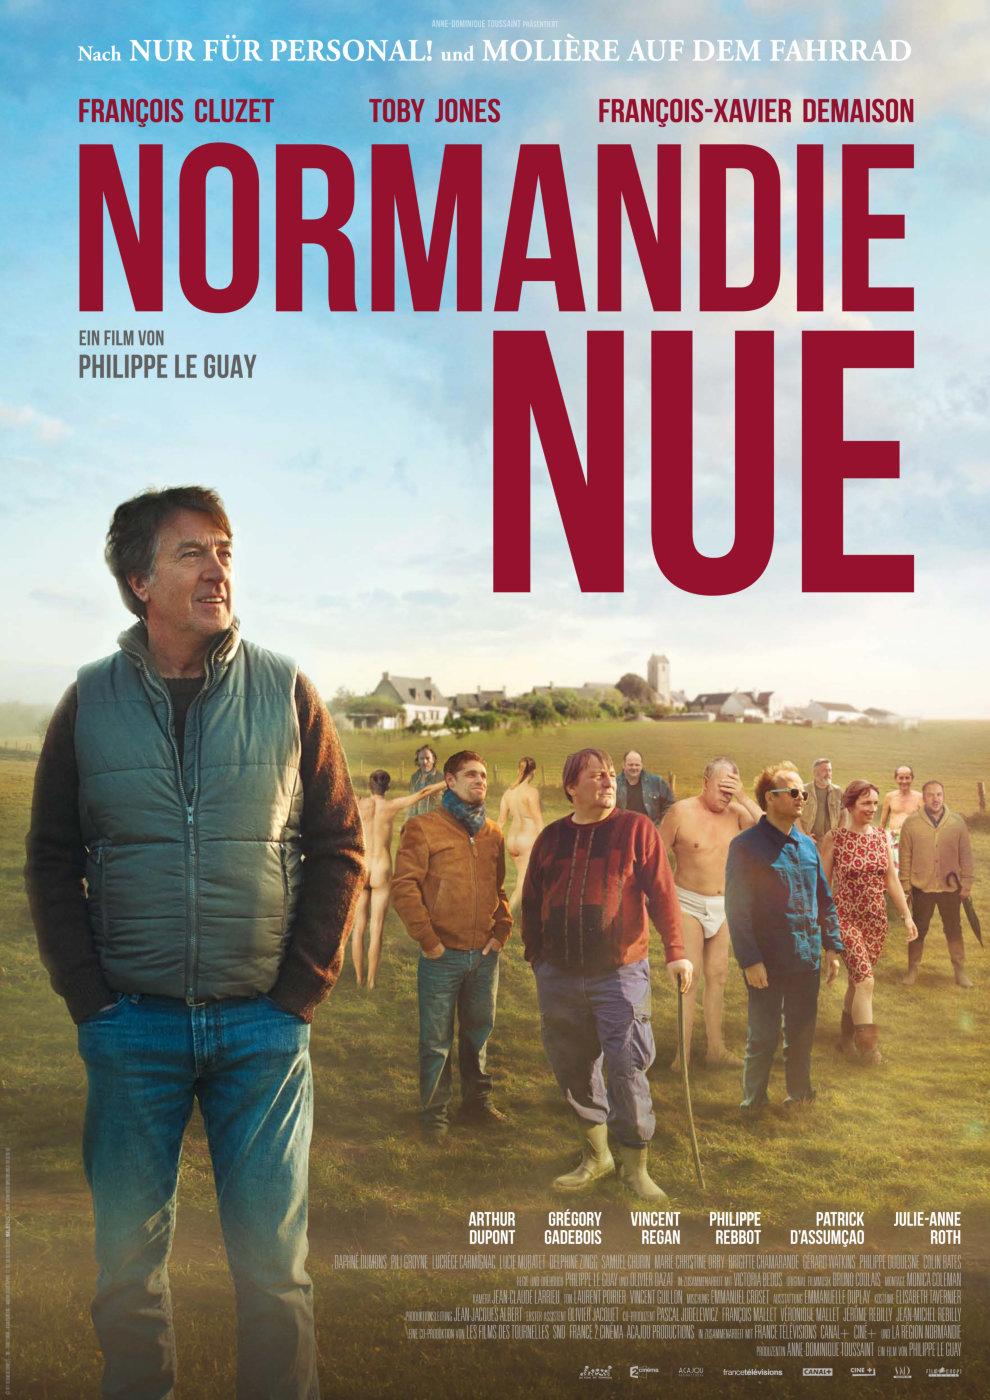 Постер фильма Normandie nue 